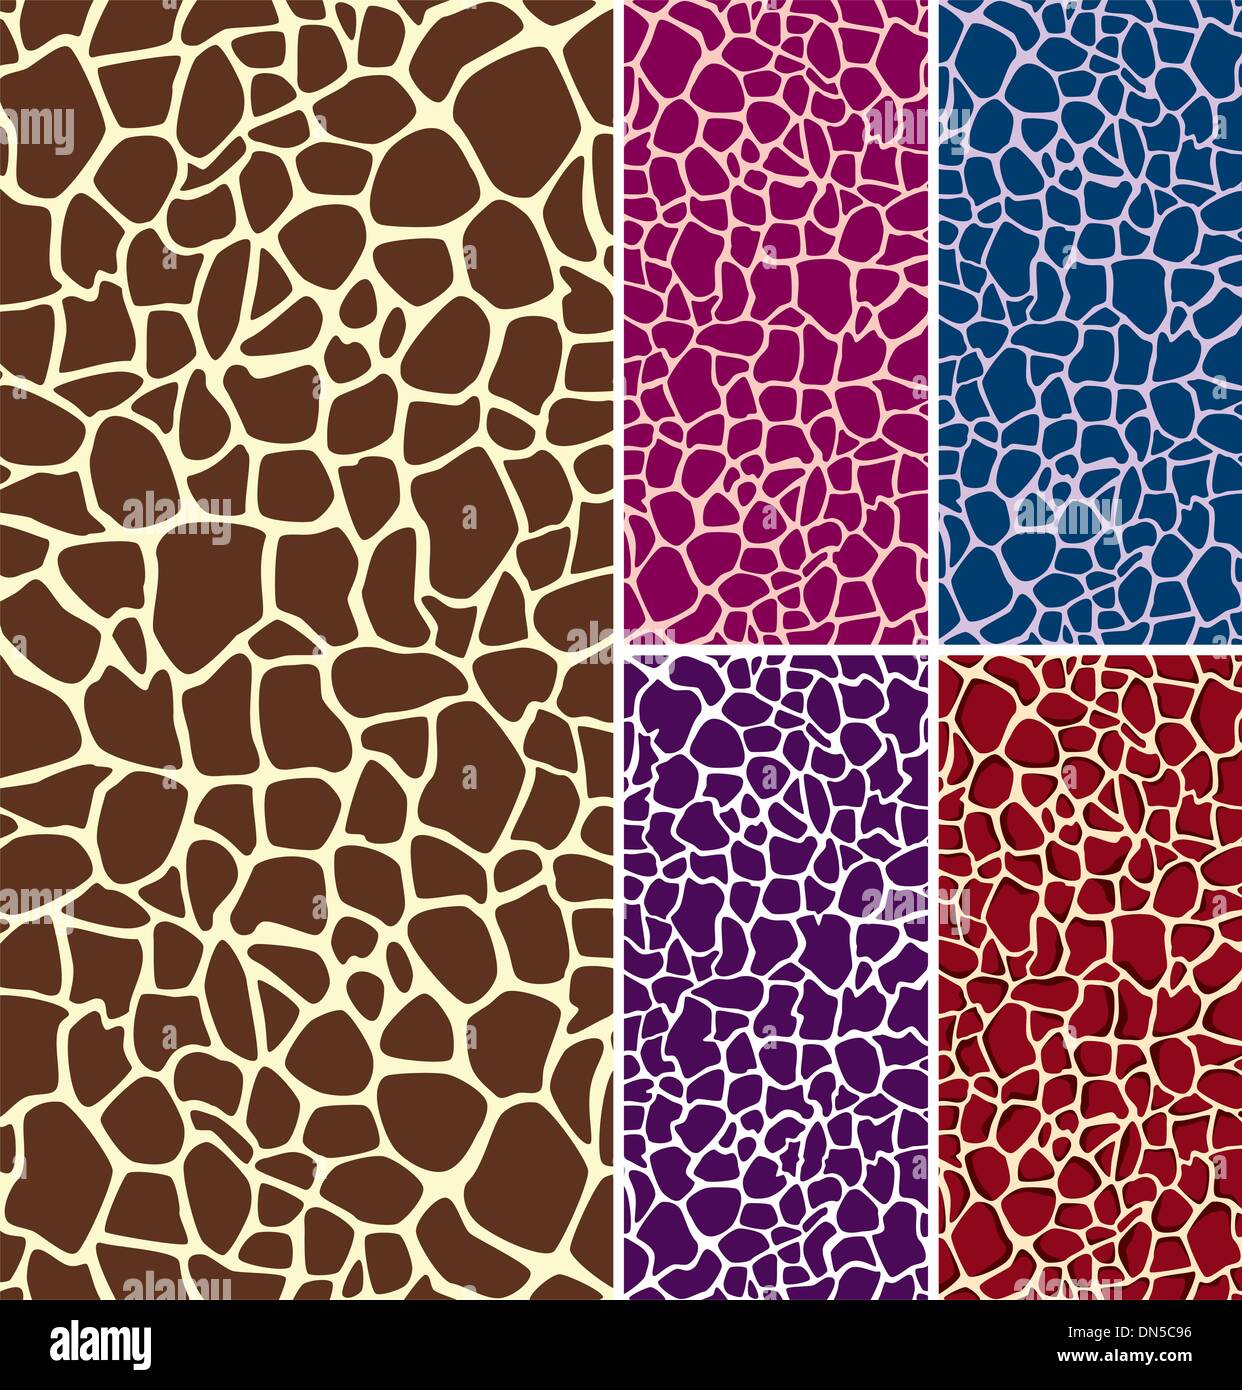 vector giraffe skin textures Stock Vector